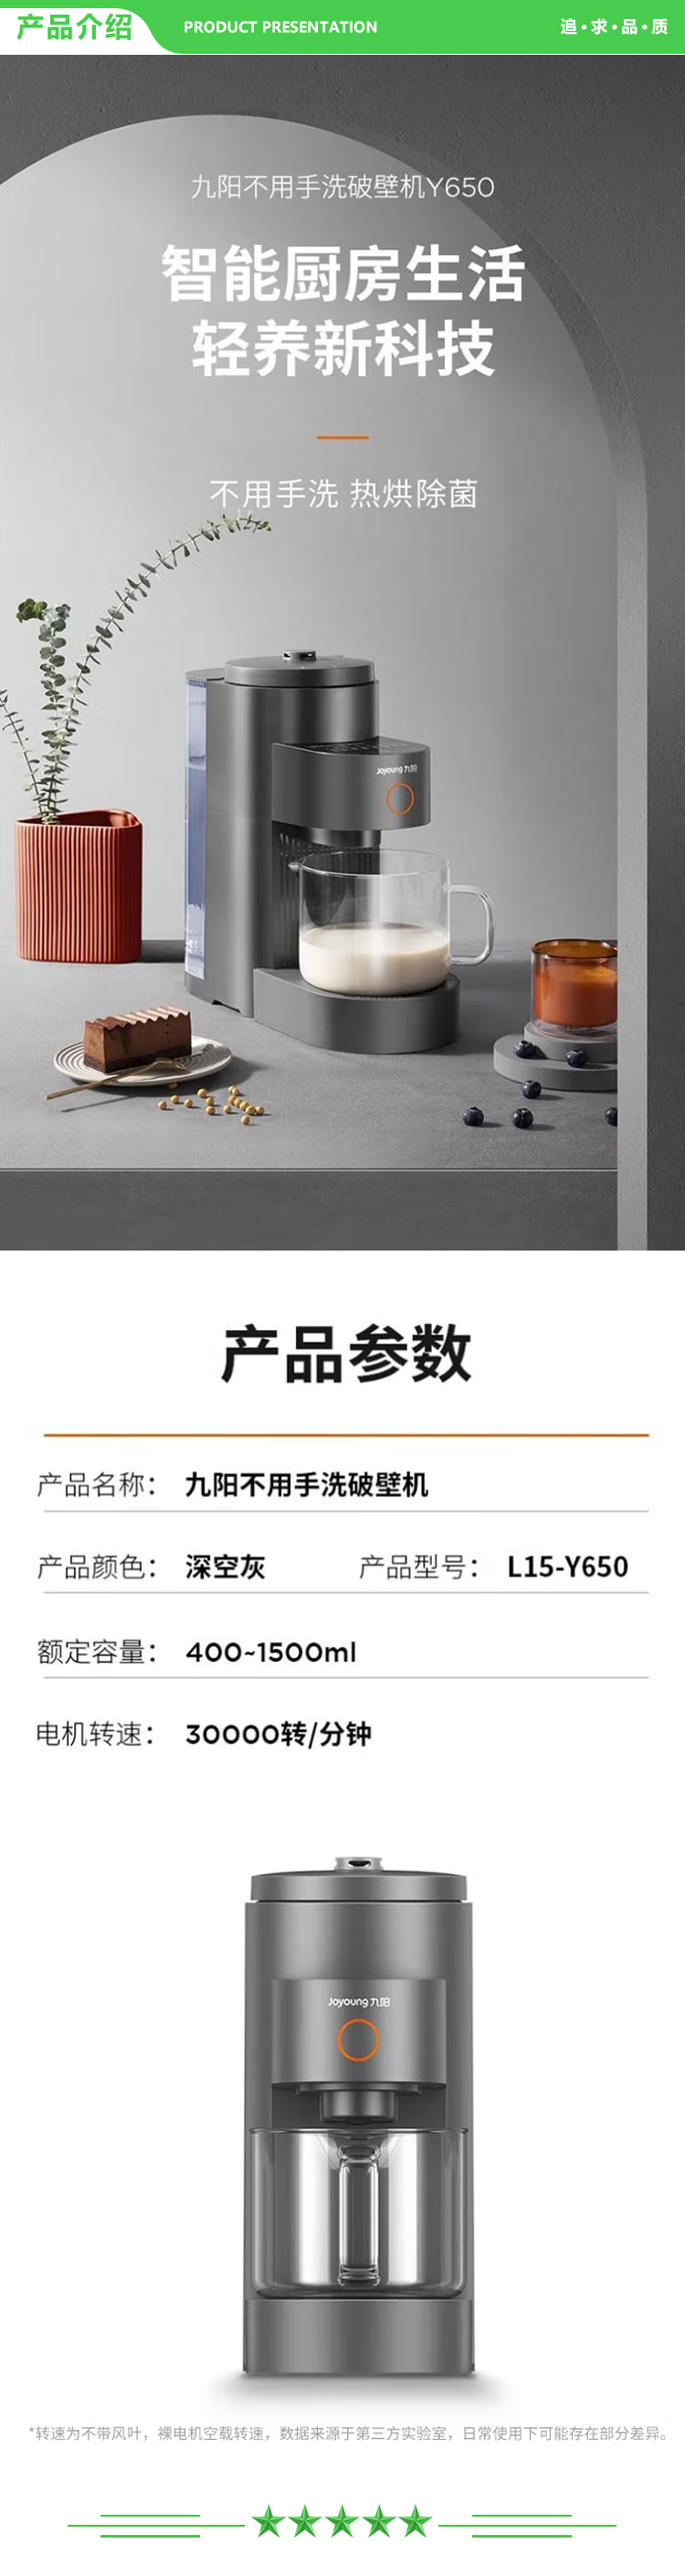 九阳 Joyoung L15-Y650 破壁机1.5L预约免滤家用免手洗多功能豆浆机榨汁机.jpg